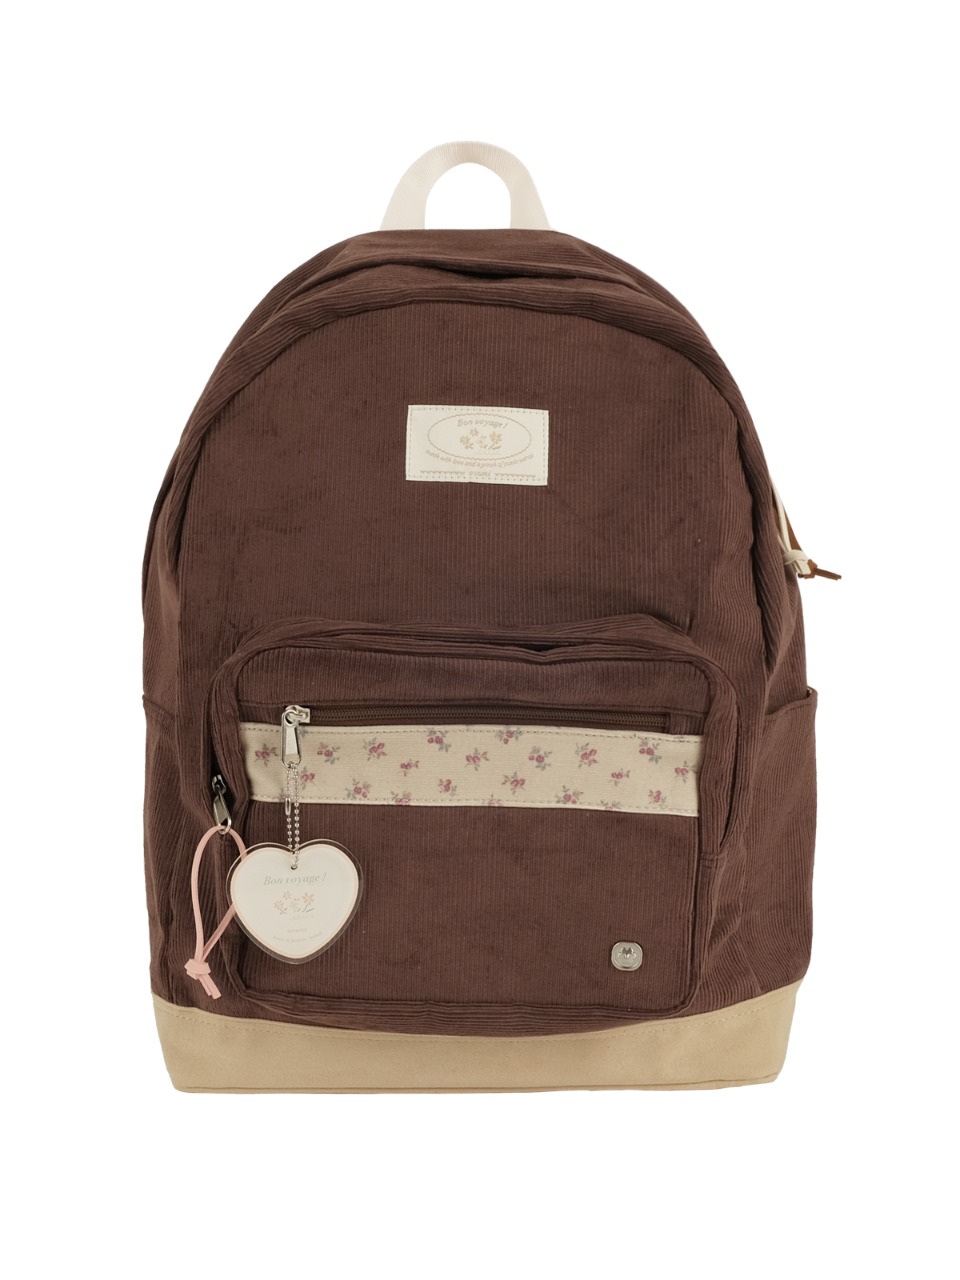 Bon voyage backpack - mauve brown - ovuni